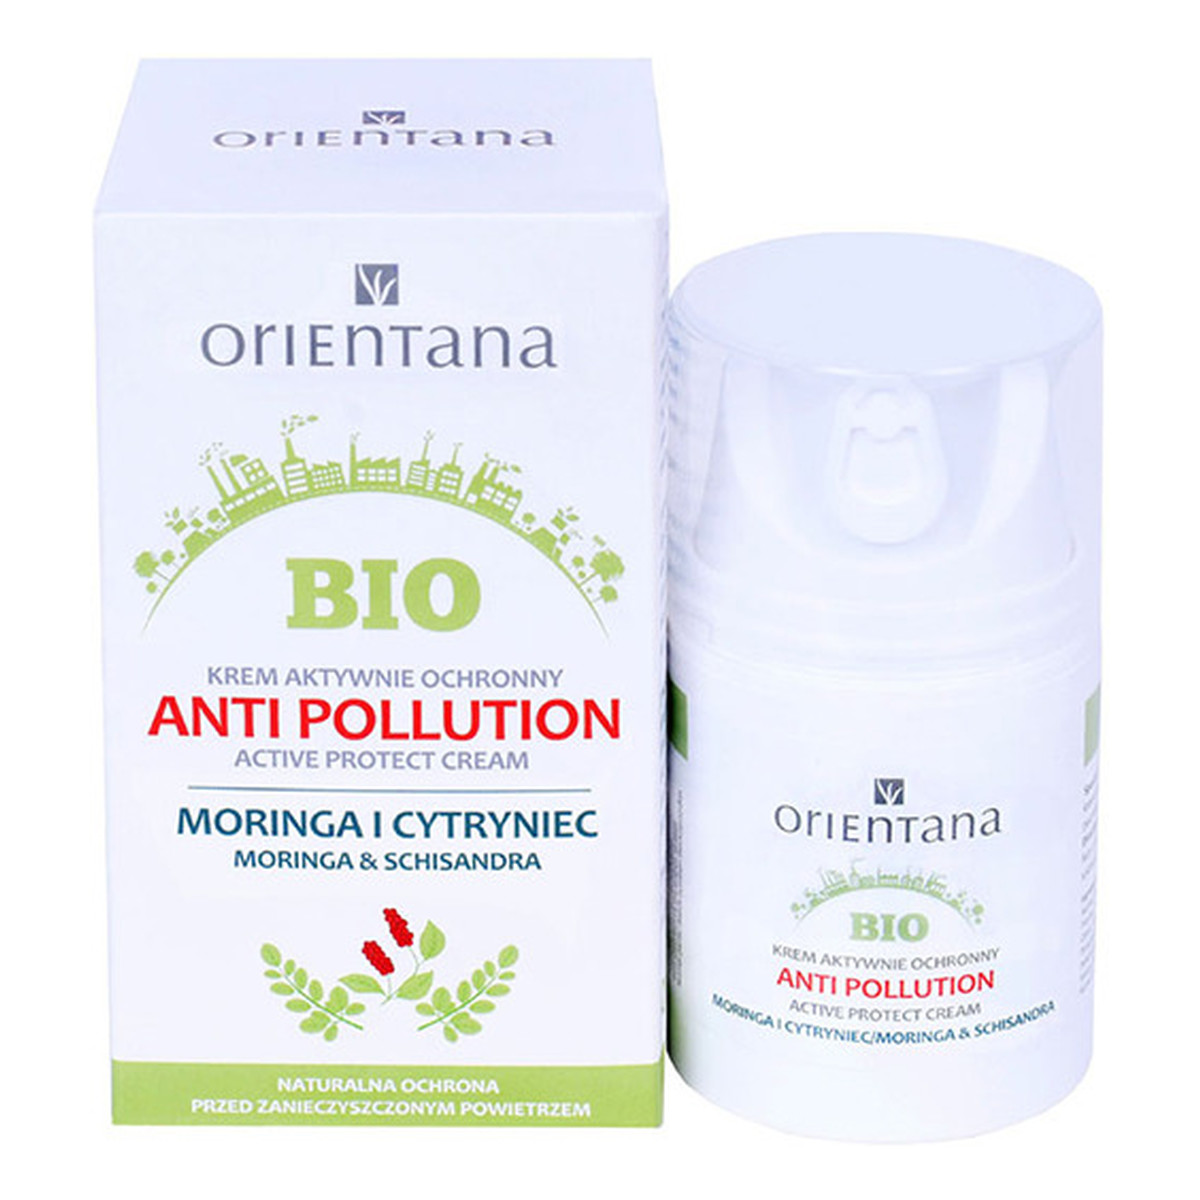 Orientana Bio Anti Pollution krem aktywnie ochronny antysmogowy 50ml